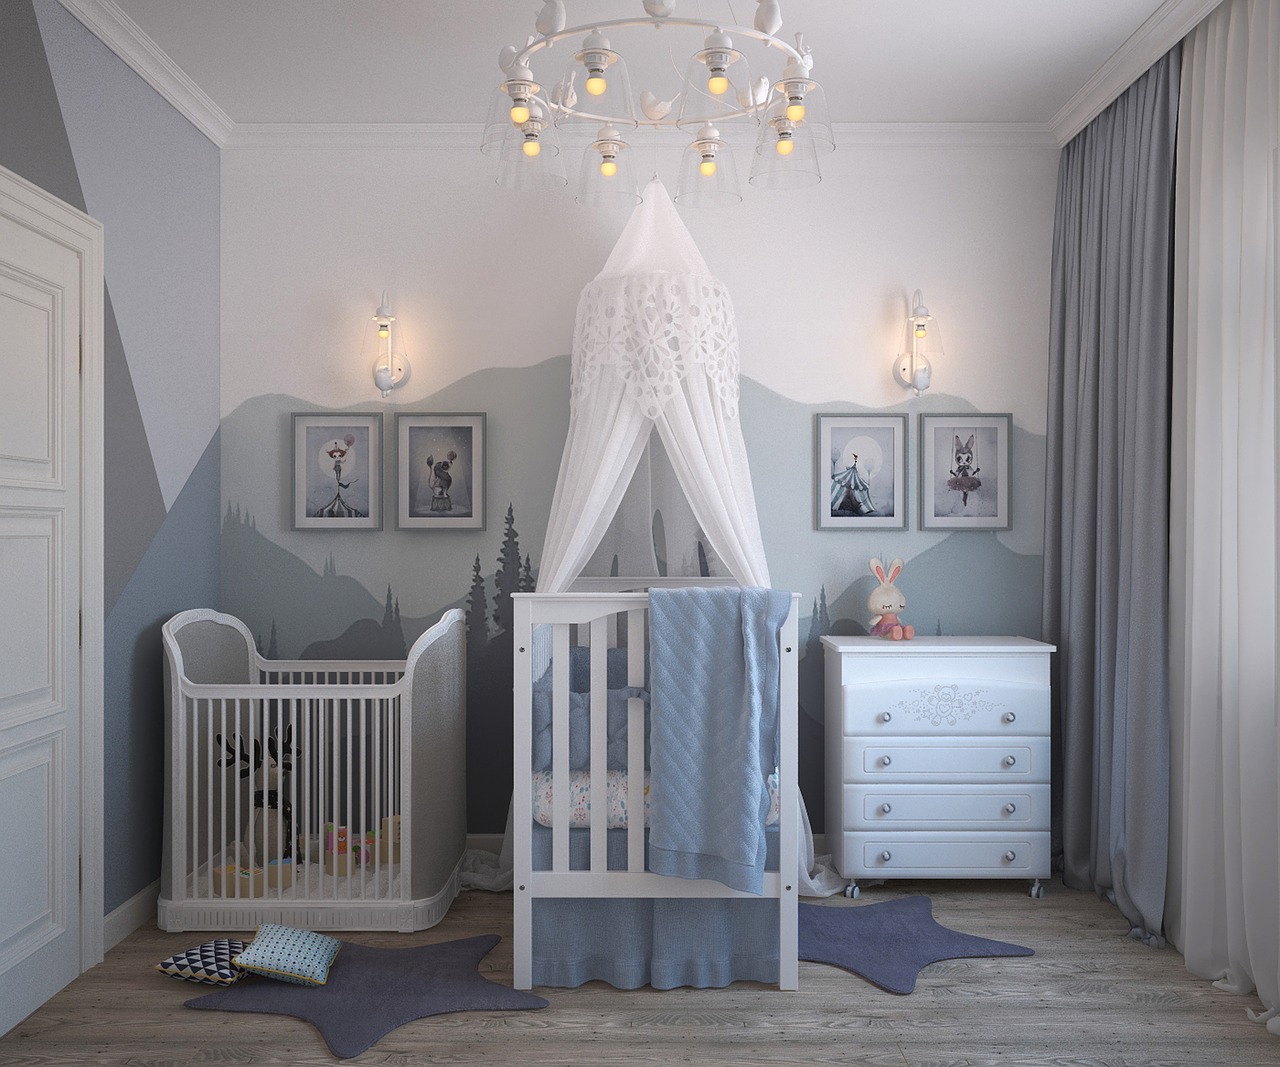 La décoration de la chambre de bébé est importante pour qu'il s'y sente bien.